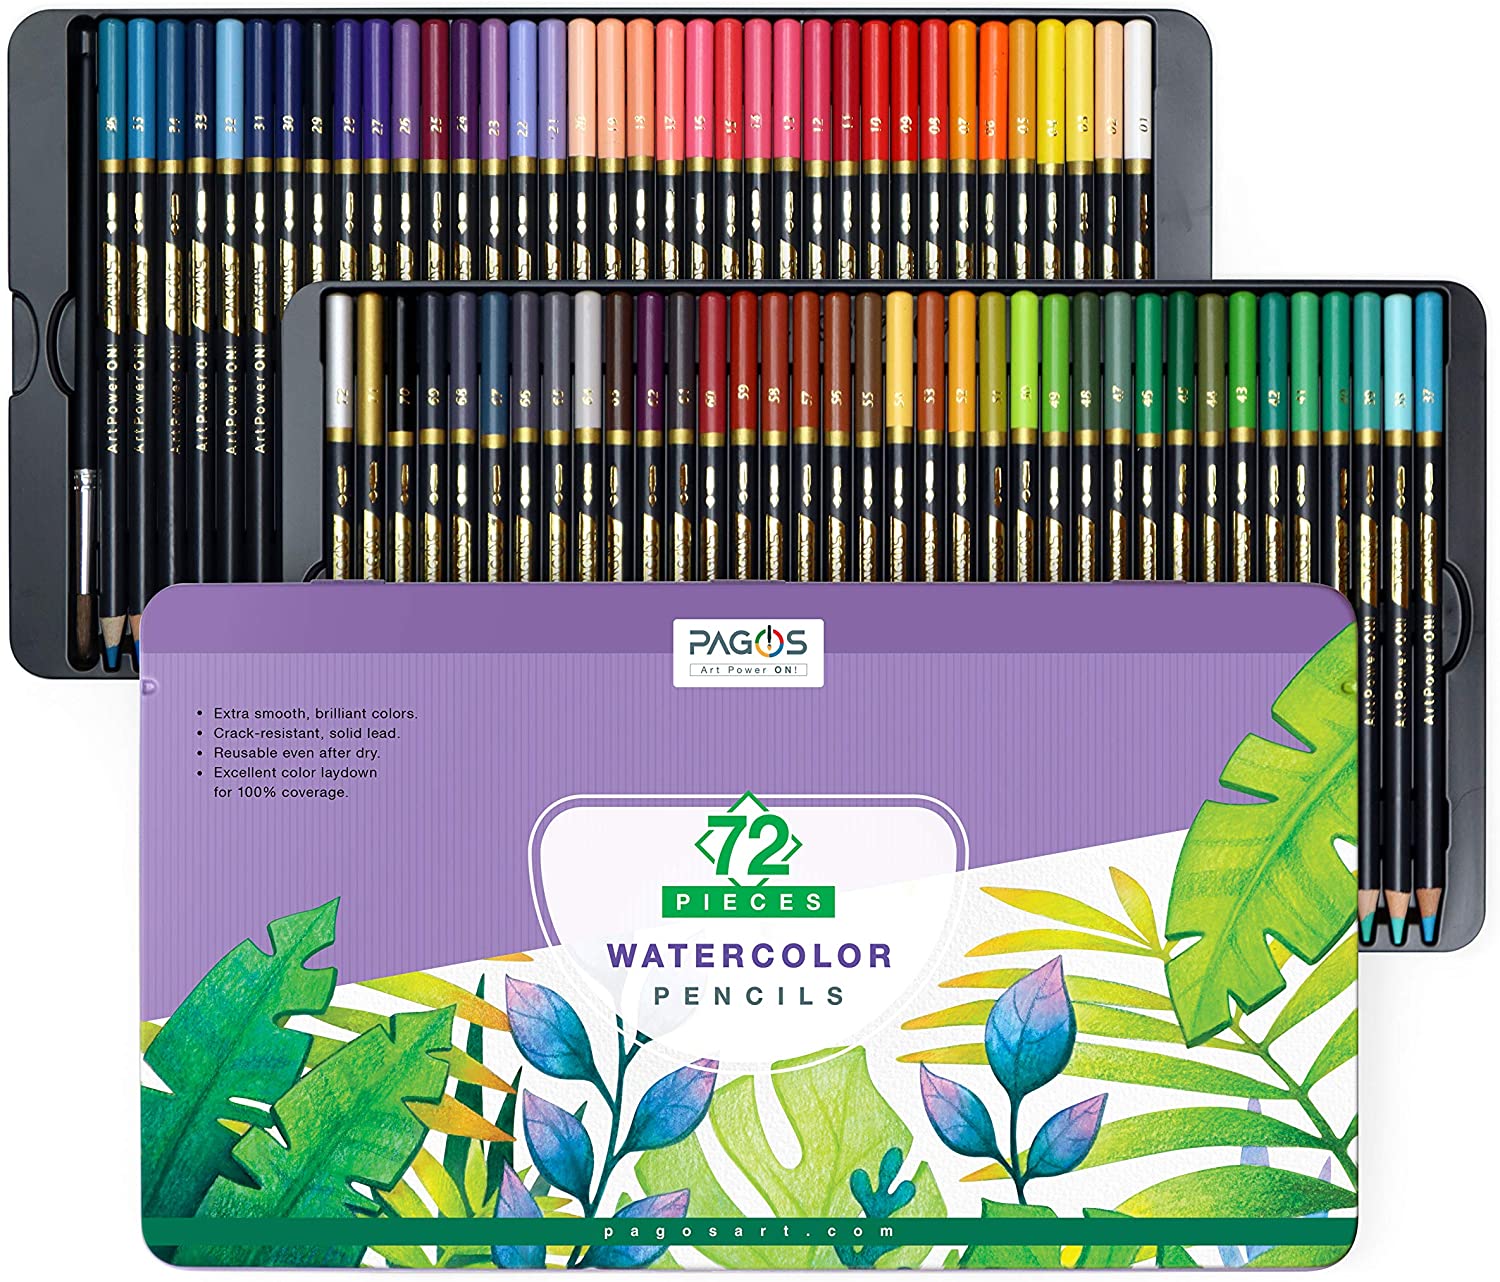 Watercolor Pencils 72 Pieces Set